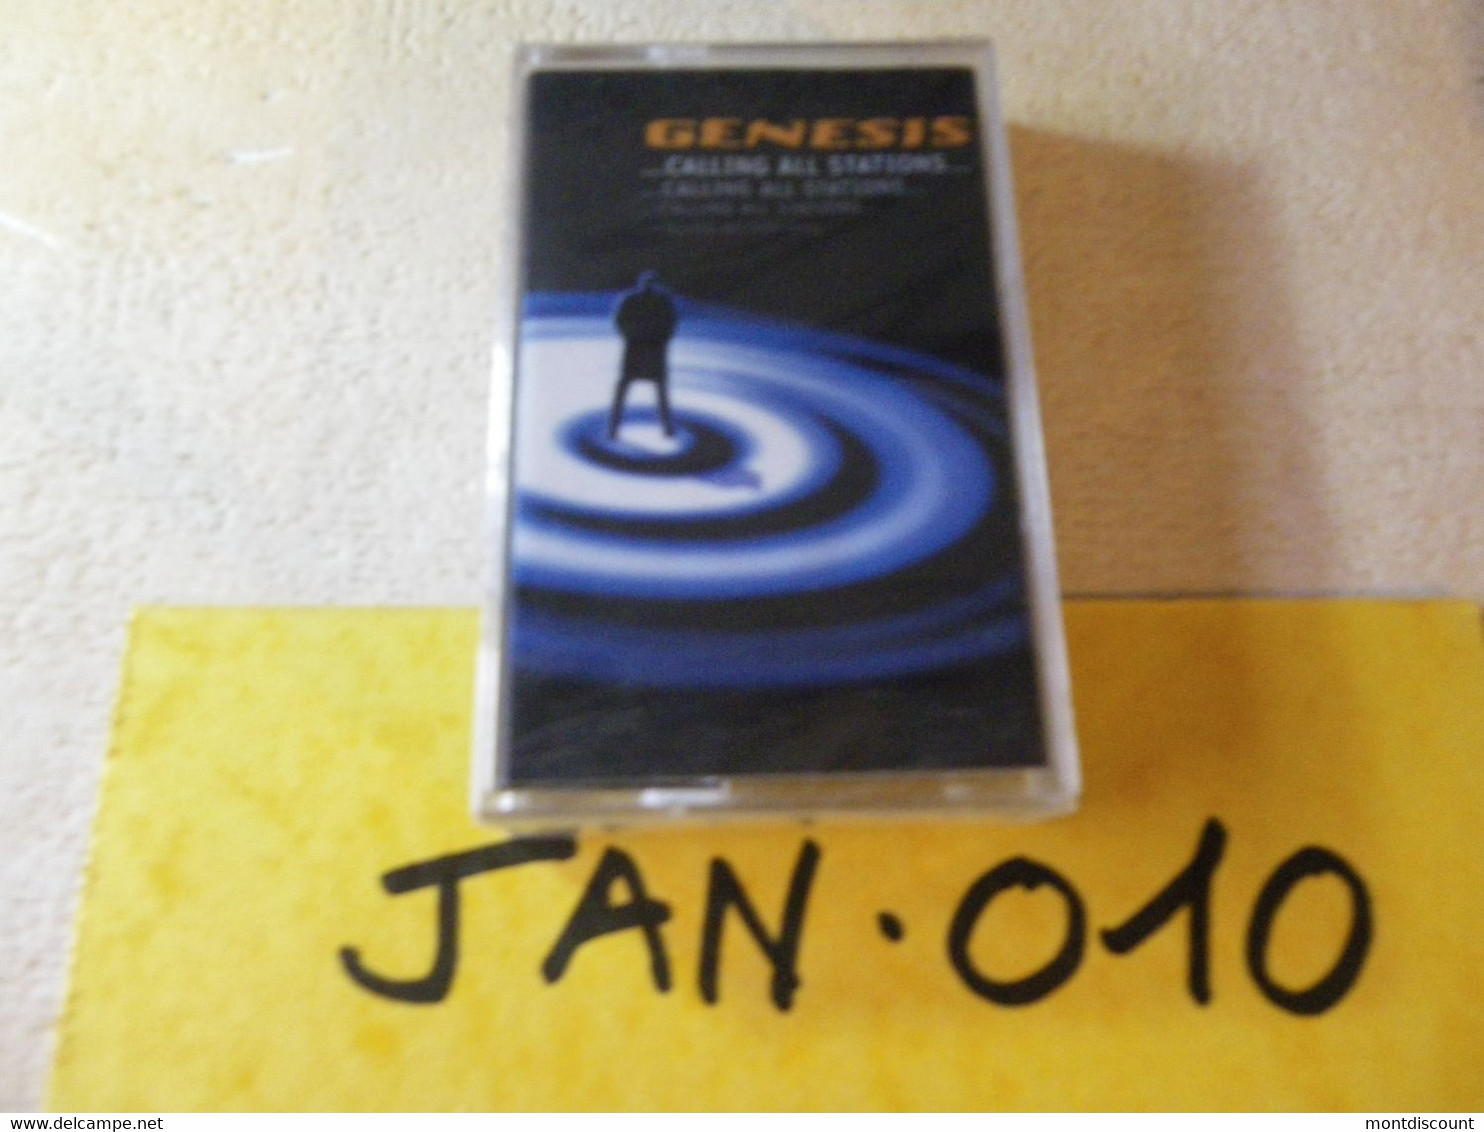 GENESIS K7 AUDIO EMBALLE D'ORIGINE JAMAIS SERVIE... VOIR PHOTO... (JAN 010) - Cassettes Audio